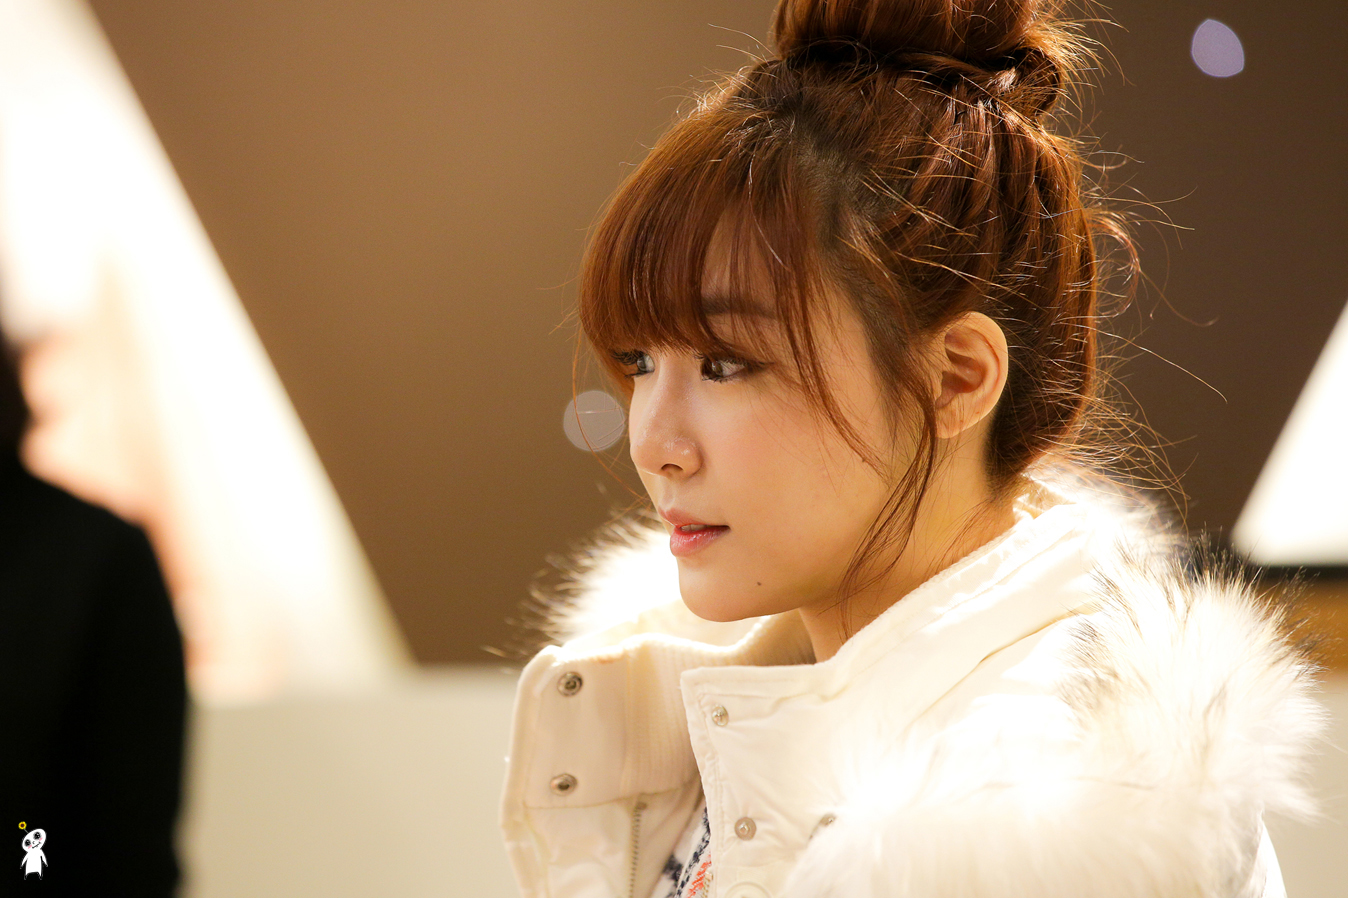 [PIC][28-11-2013]Tiffany ghé thăm cửa hàng "QUA" ở Hyundai Department Store vào trưa nay - Page 2 2441204552980C8233AB40